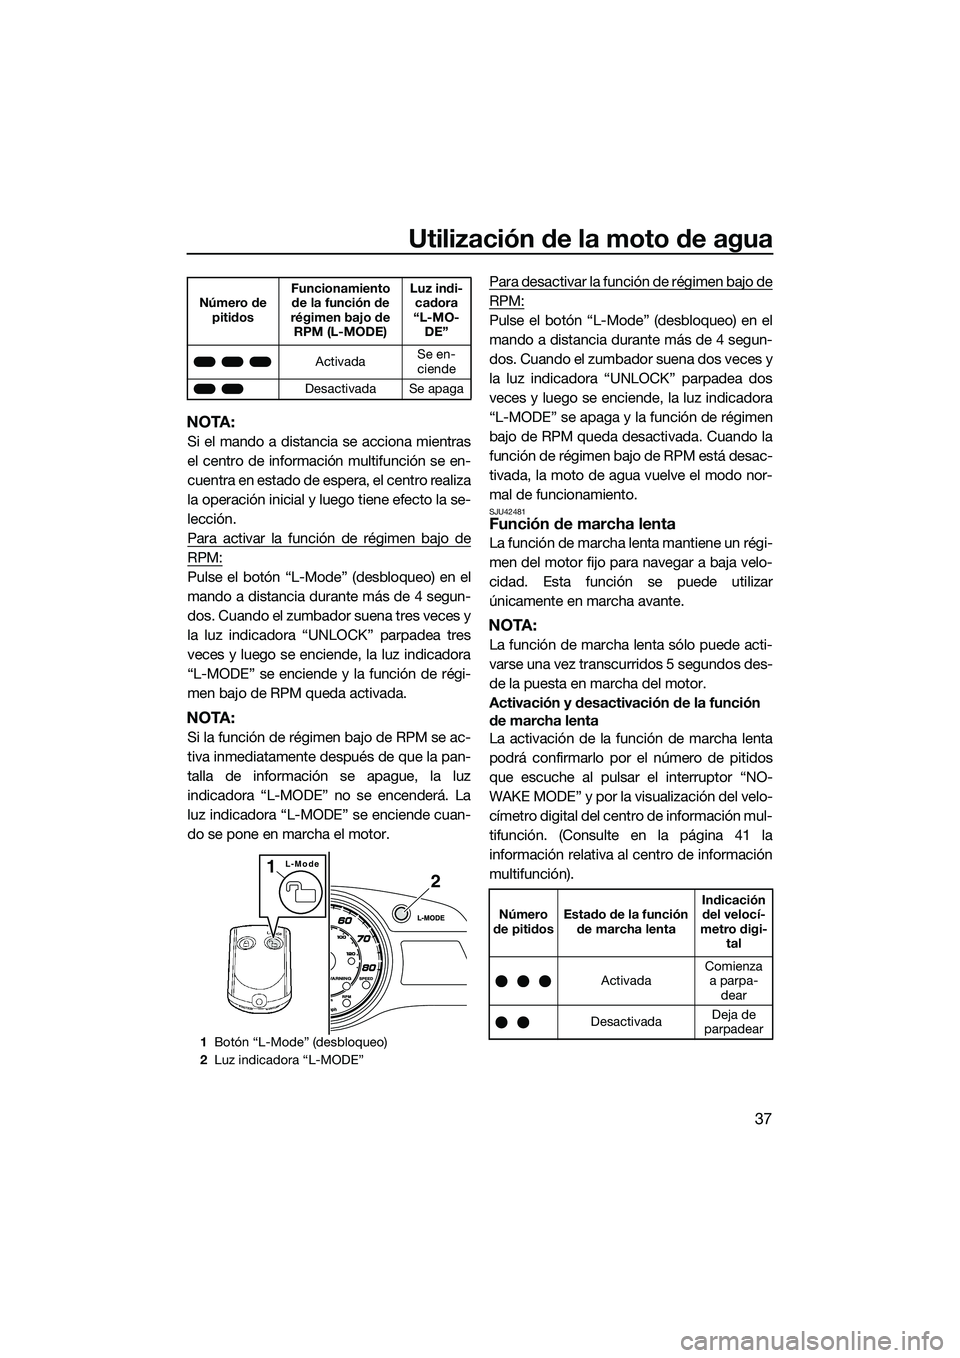 YAMAHA FX HO 2014  Manuale de Empleo (in Spanish) Utilización de la moto de agua
37
NOTA:
Si el mando a distancia se acciona mientras
el centro de información multifunción se en-
cuentra en estado de espera, el centro realiza
la operación inicial